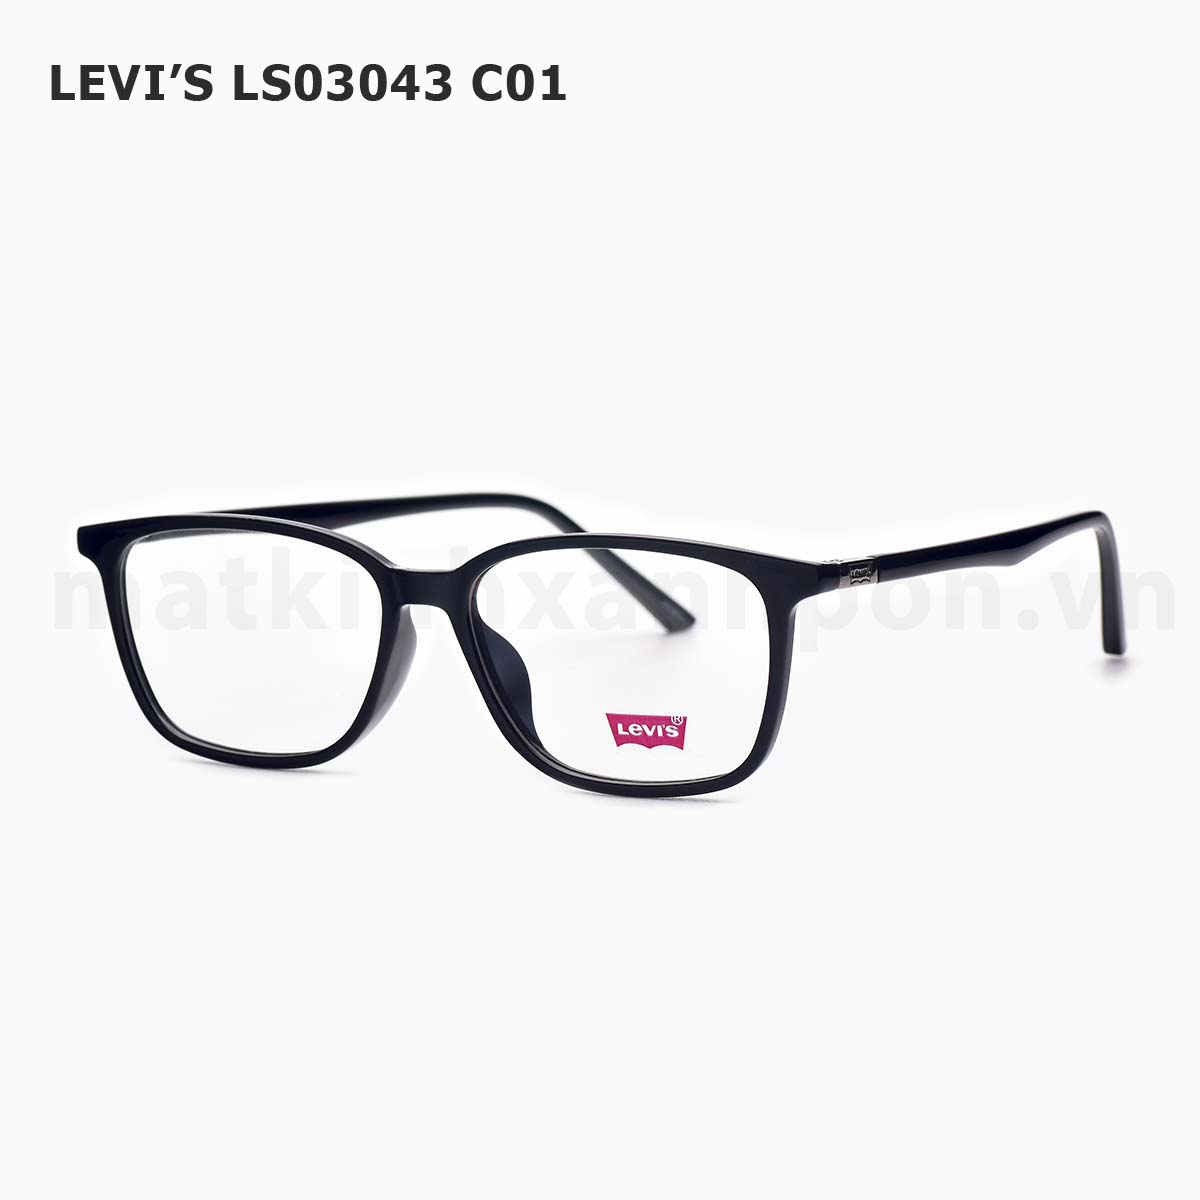 Levi’s LS03043 C01